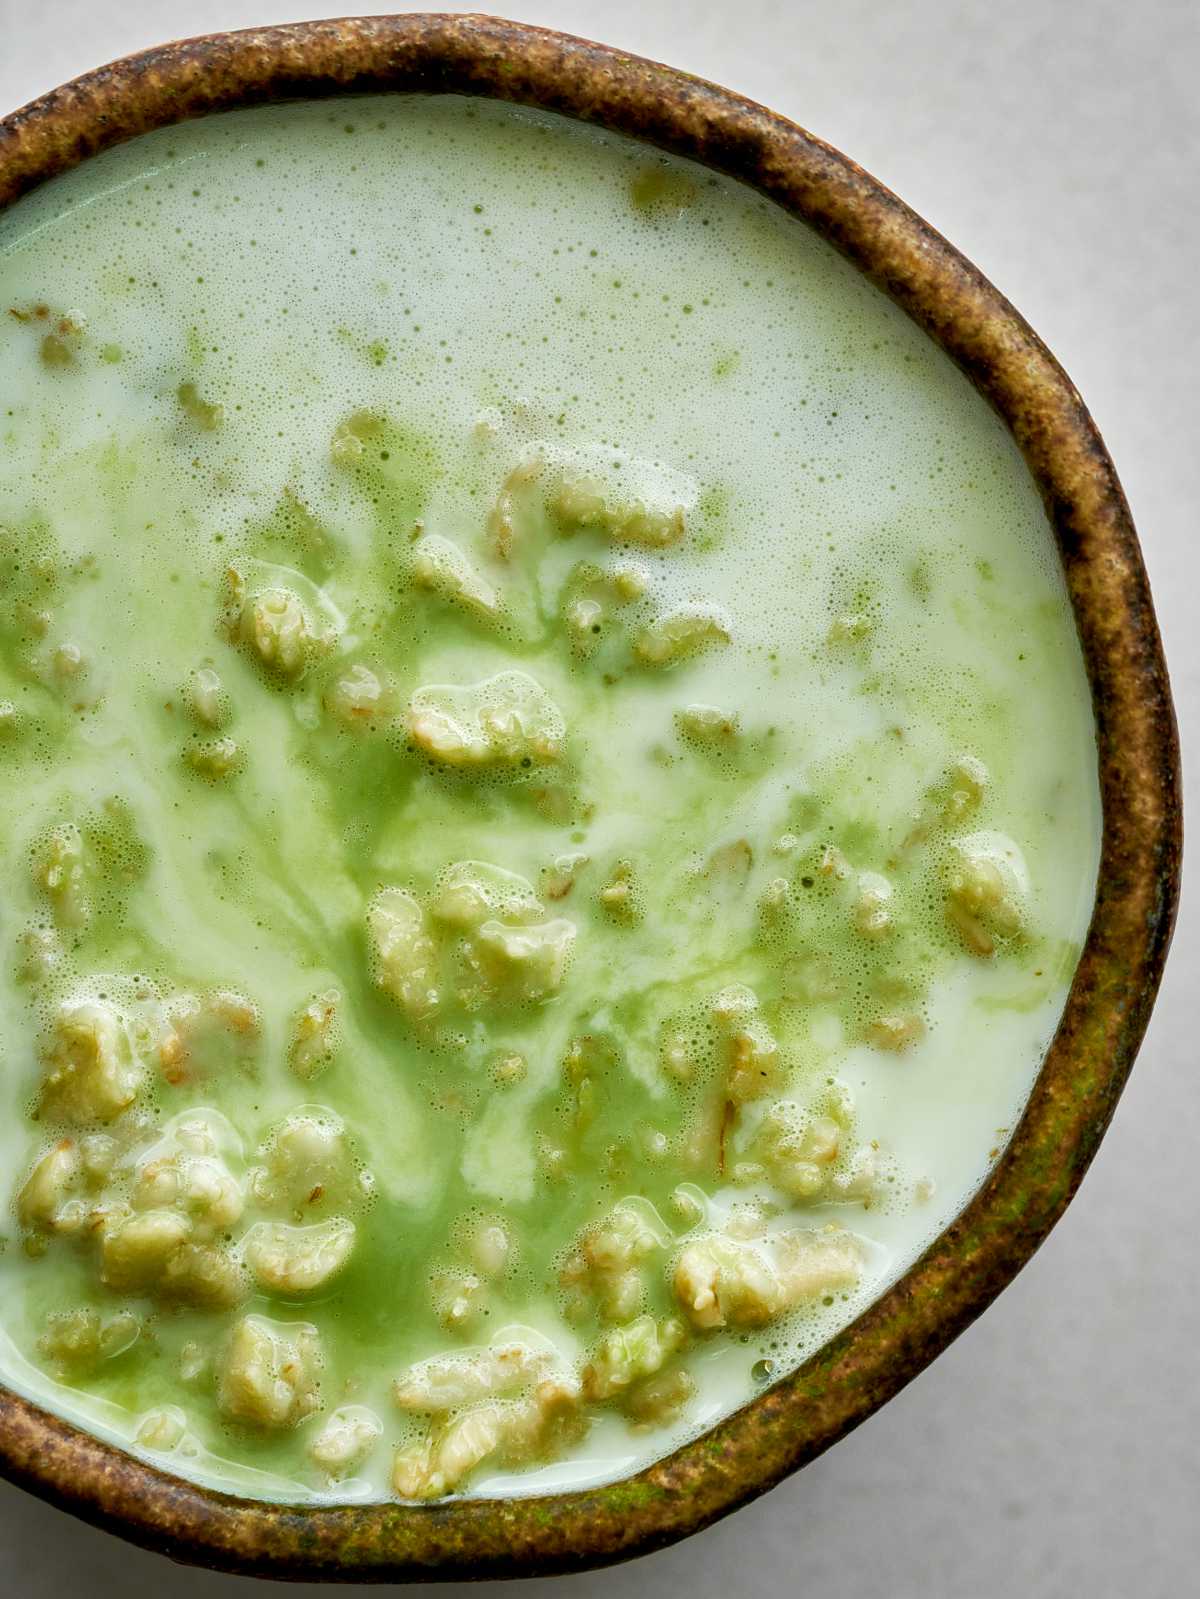 Green swirled runny oatmeal in a matcha bowl.